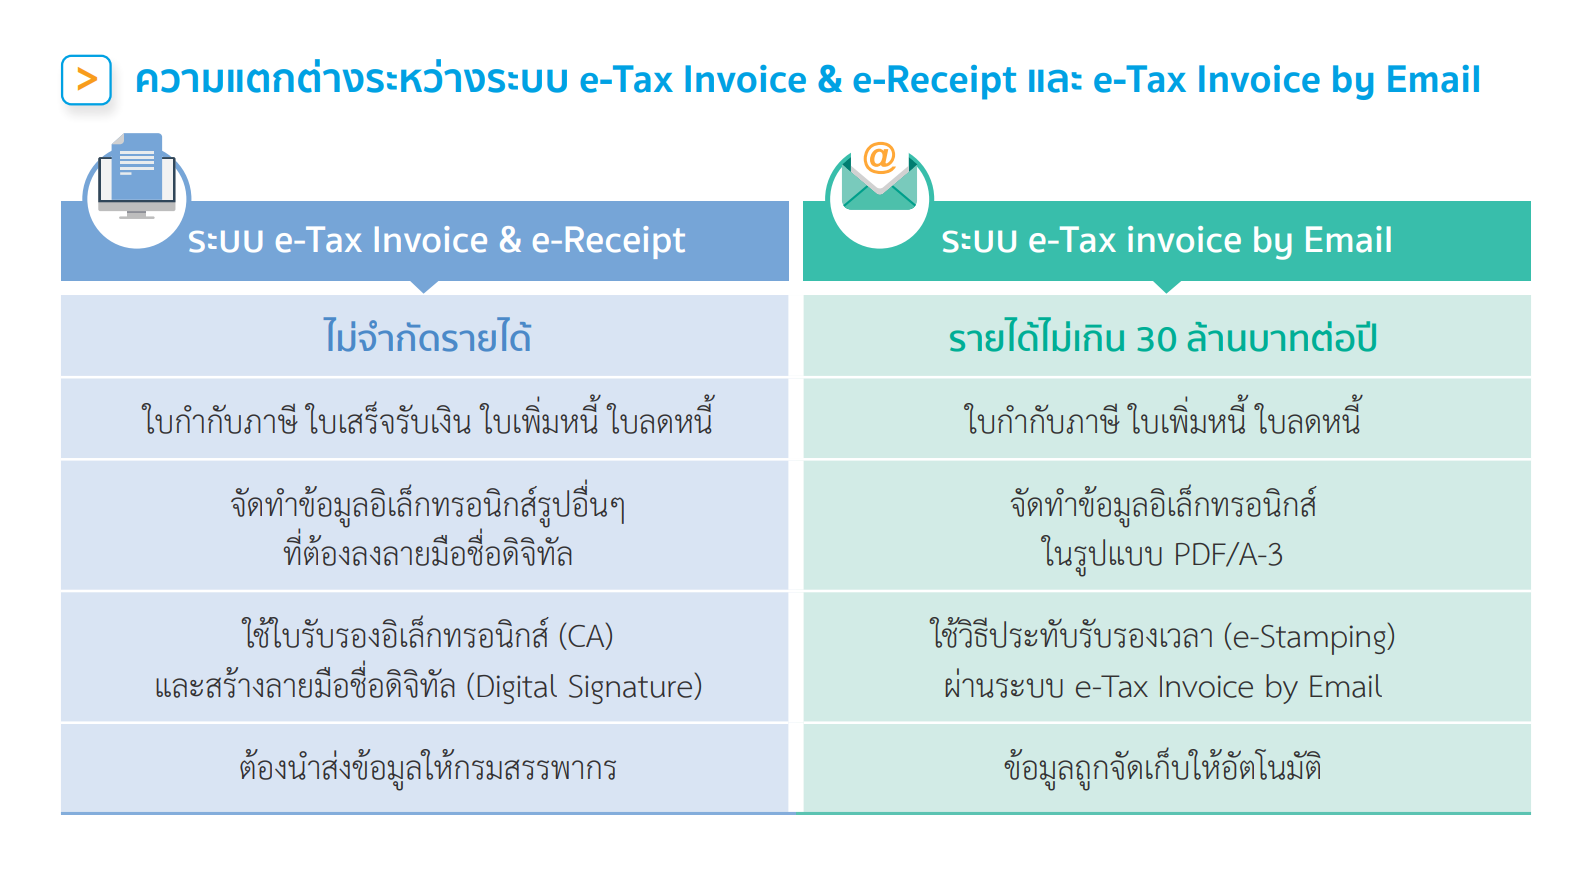 ความแตกต่างระหว่าง e-Tax invoice & e-Receipt กับ e-Tax invoice by Email